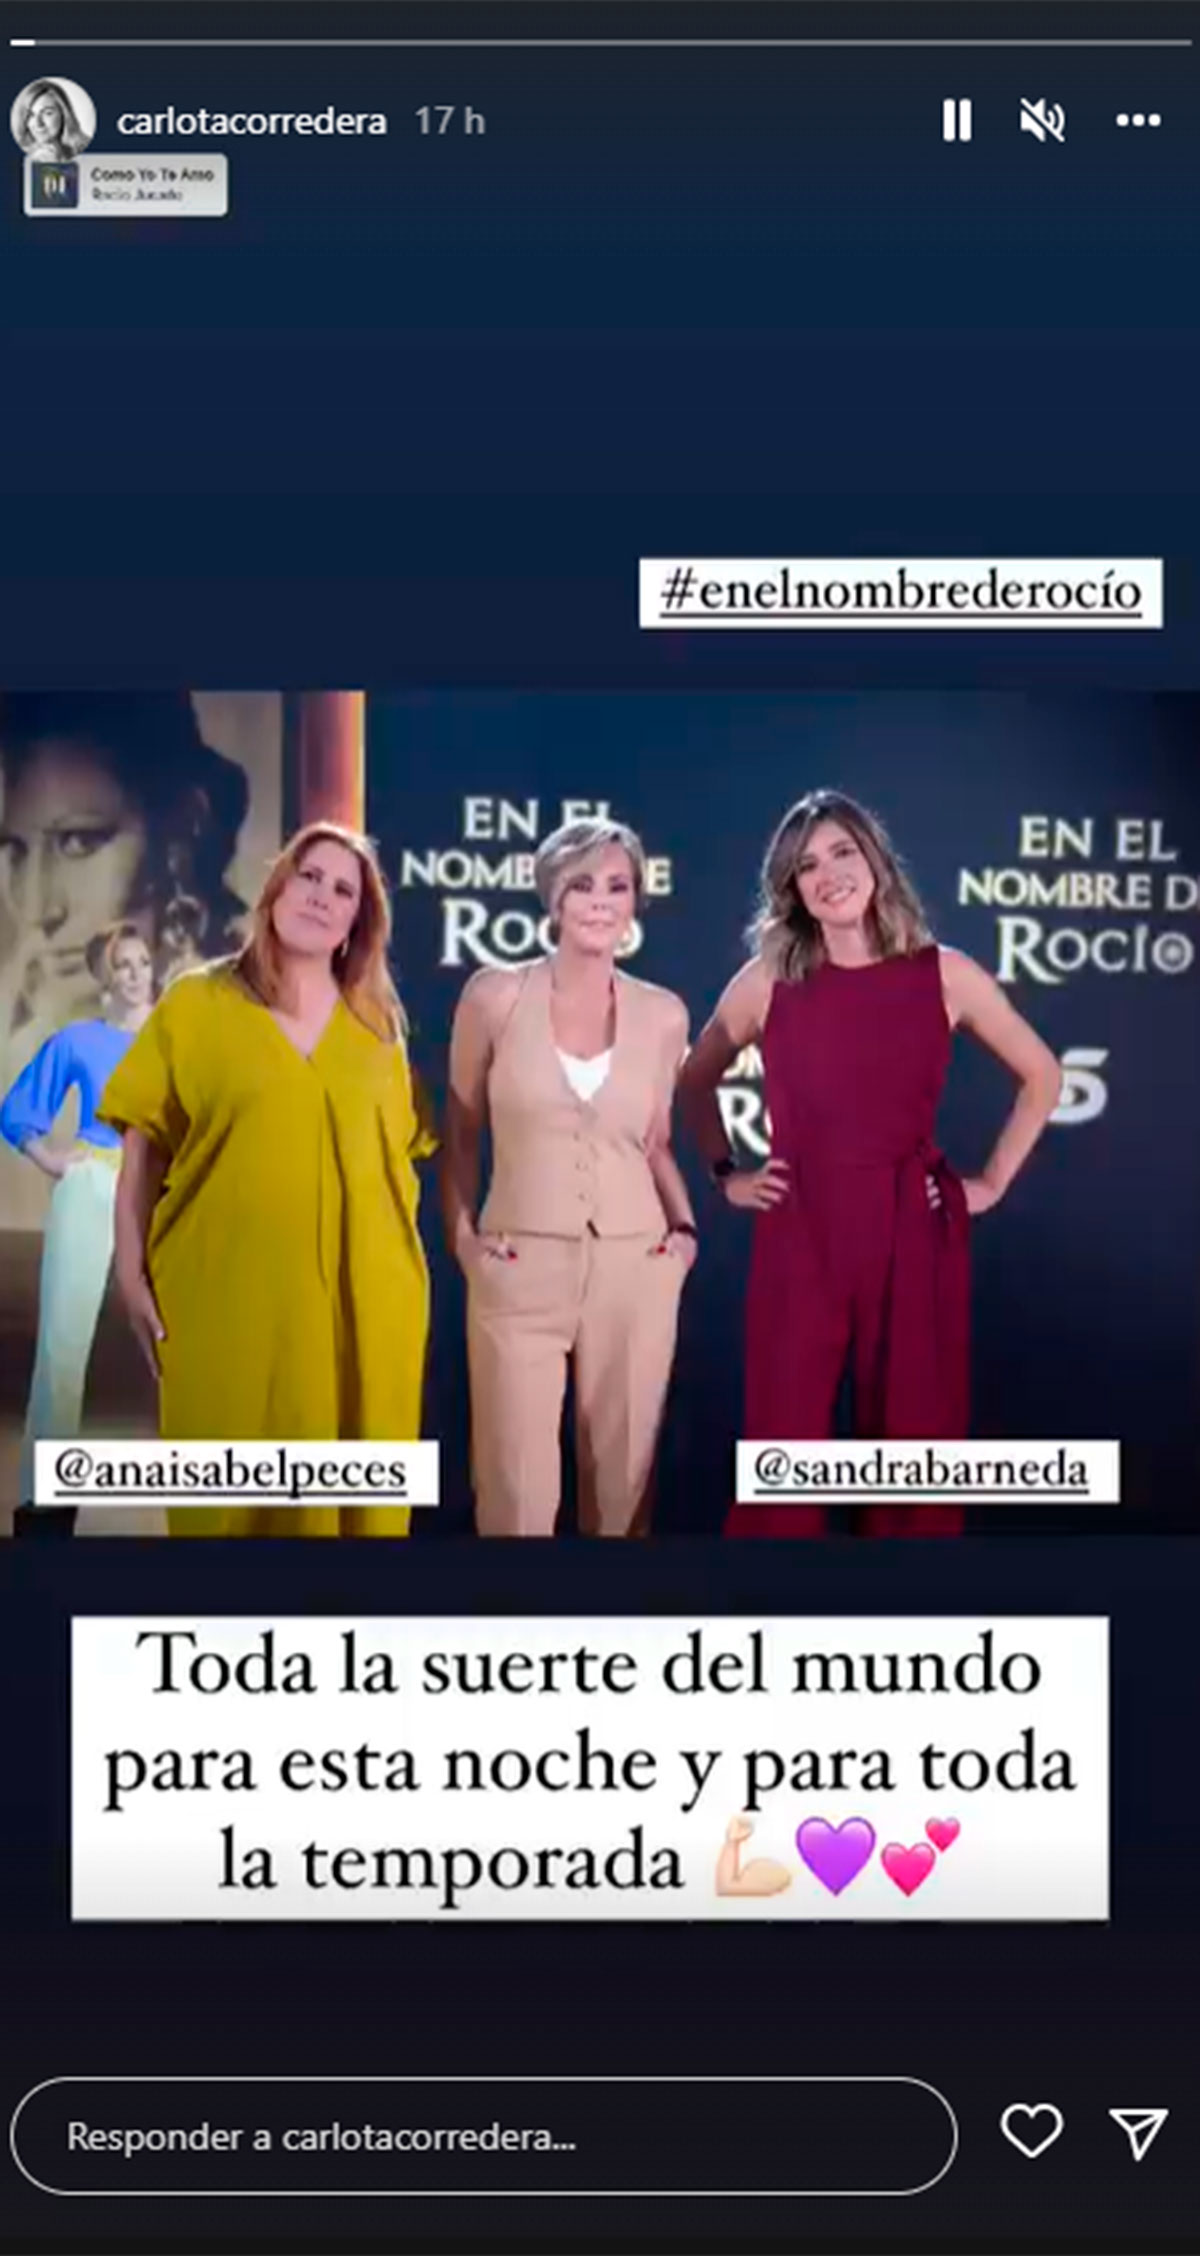 El mensaje que Carlota Corredera manda a Rocío Carrasco y Sandra Barneda por el estreno de 'En el nombre de Rocío'